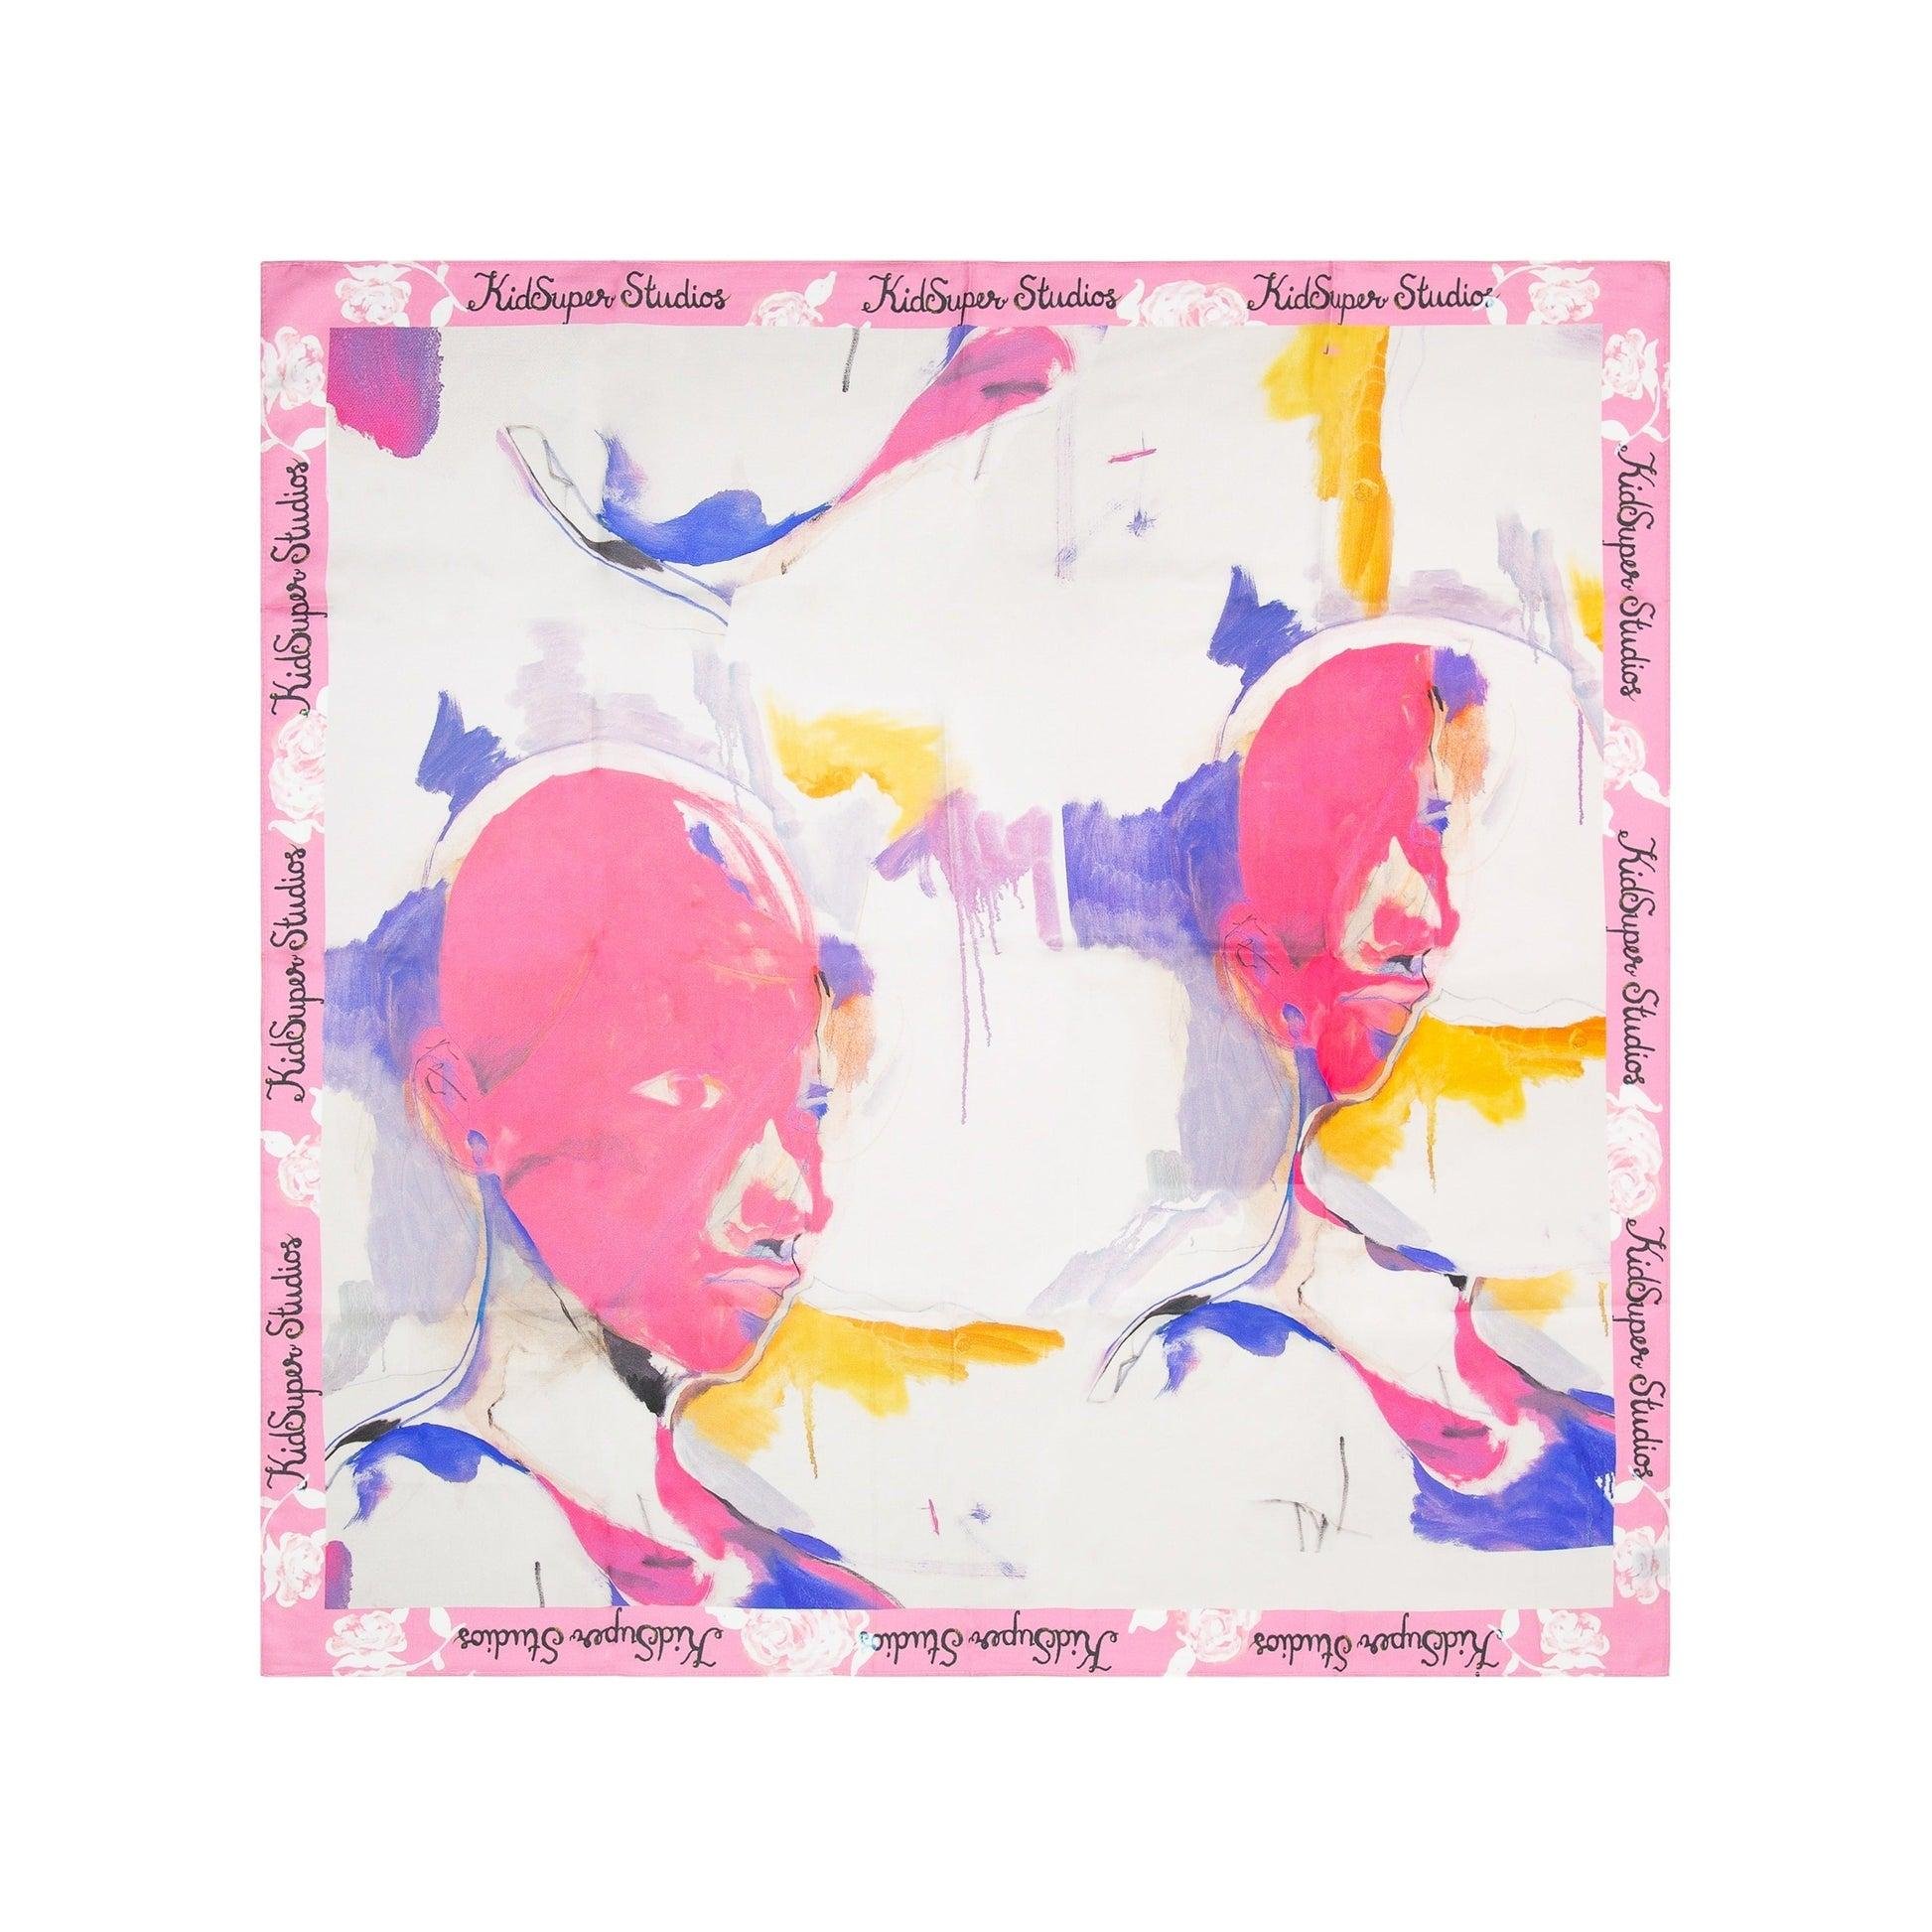 Painted-Printed Silk Scarf [Multi] by KIDSUPER STUDIOS